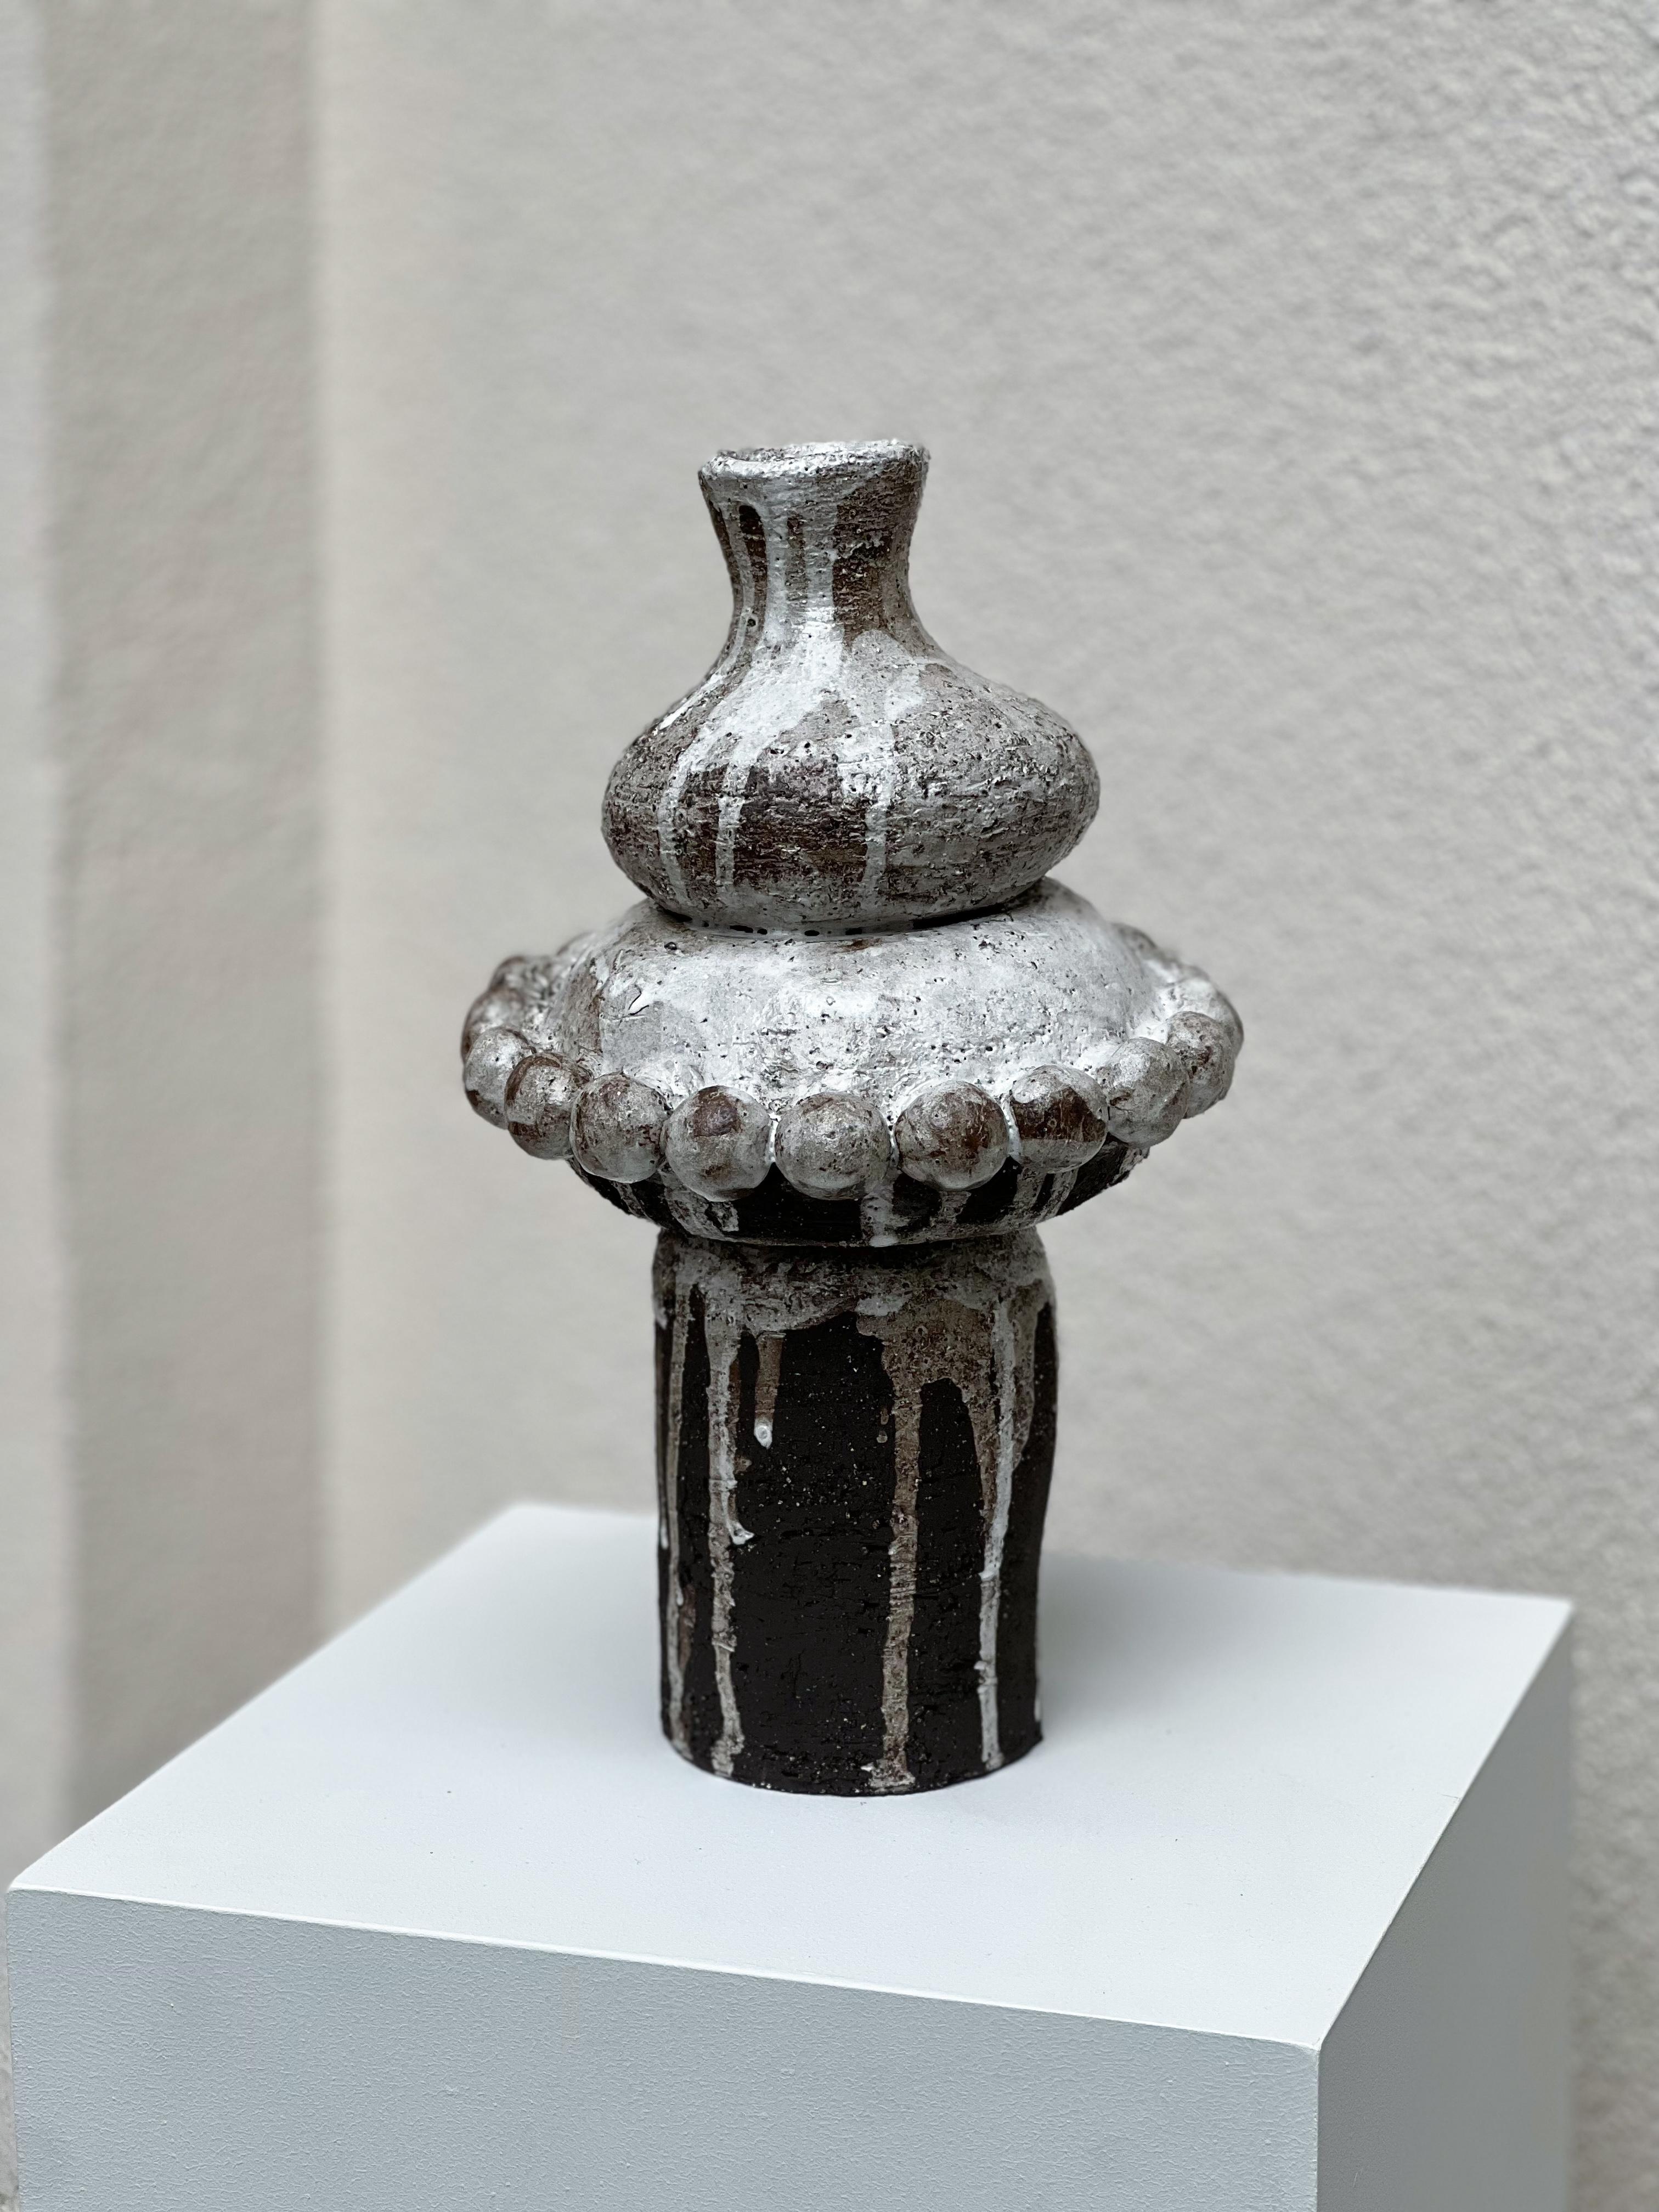 Vase anatolien 2 de Güler Elçi
Dimensions : L 20,3 x P 20,3 x H 30 cm : L 20,3 x P 20,3 x H 30 cm.
Matériaux : Grès Céramique.

Güler Elçi est une artiste céramiste basée à Istanbul. À la lumière de sa carrière d'ingénieur, elle considère la